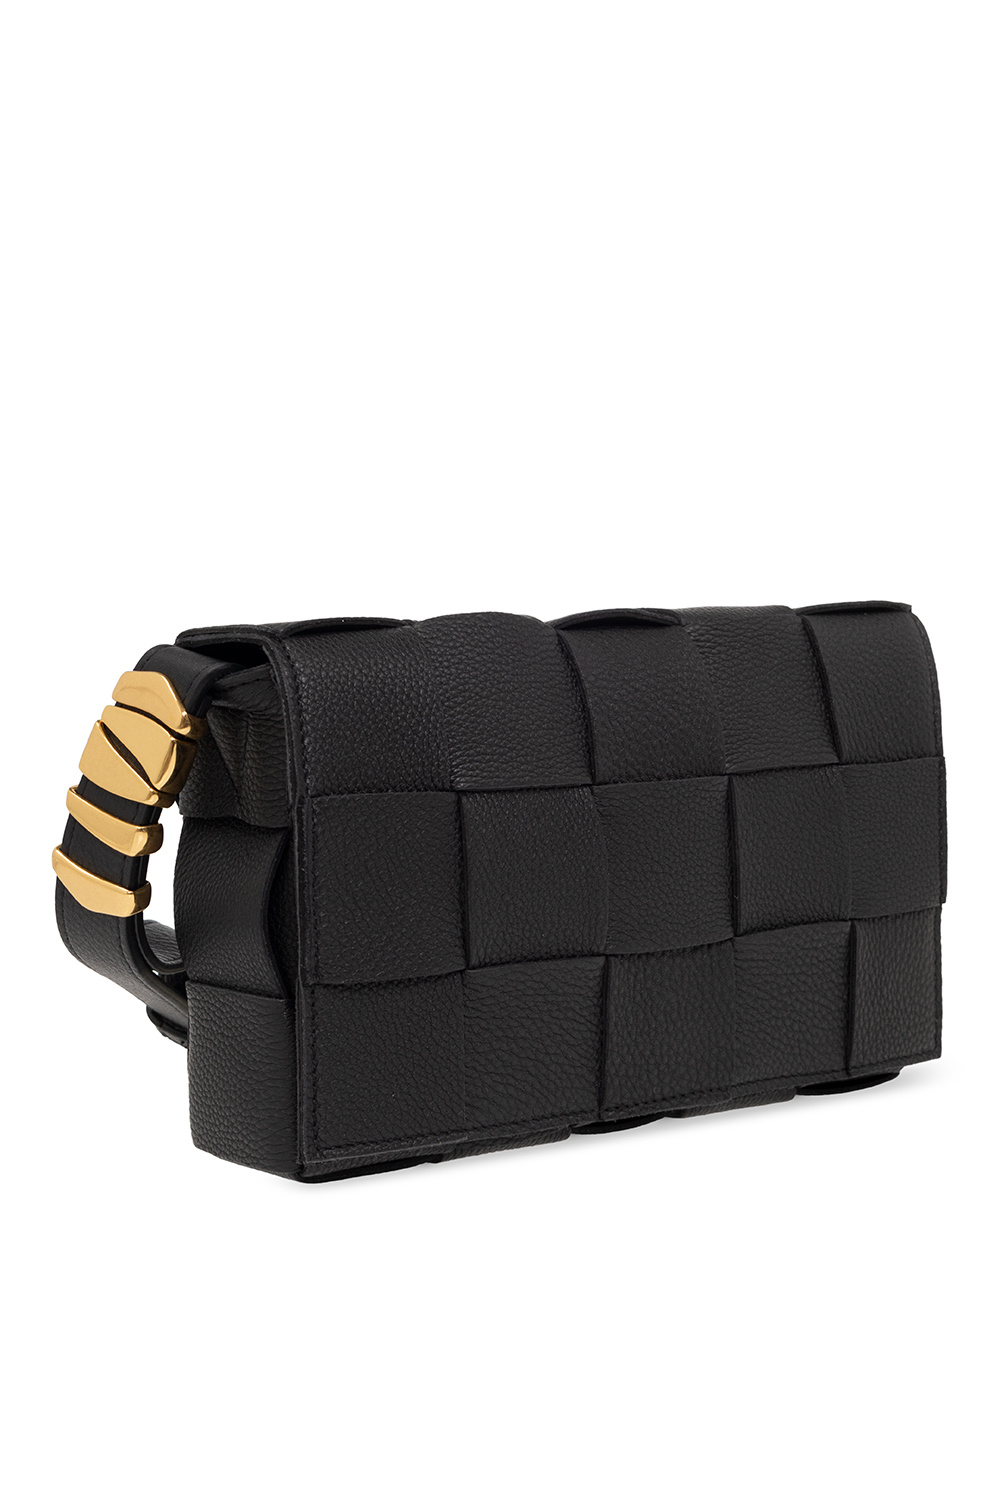 bottega Stivali Veneta ‘Cassette Small’ shoulder bag